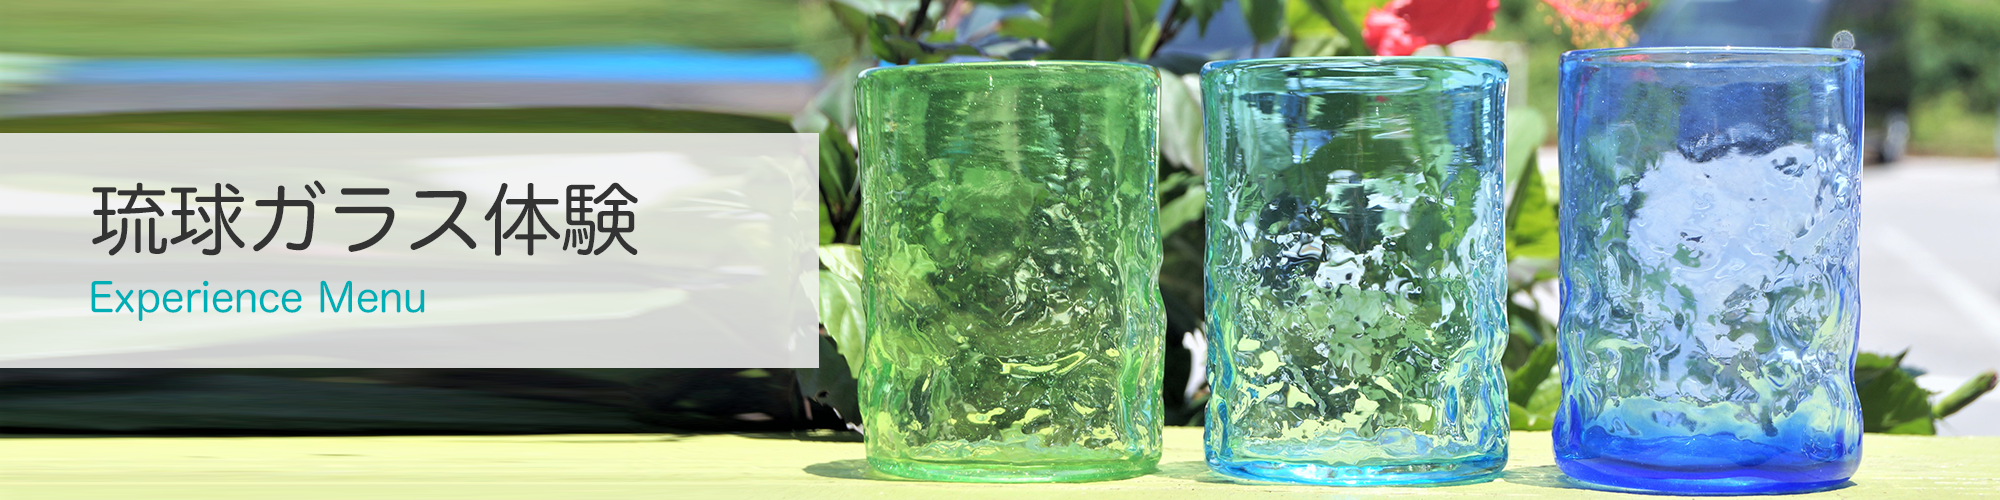 琉球ガラス体験 沖縄 琉球ガラス制作体験 森のガラス館